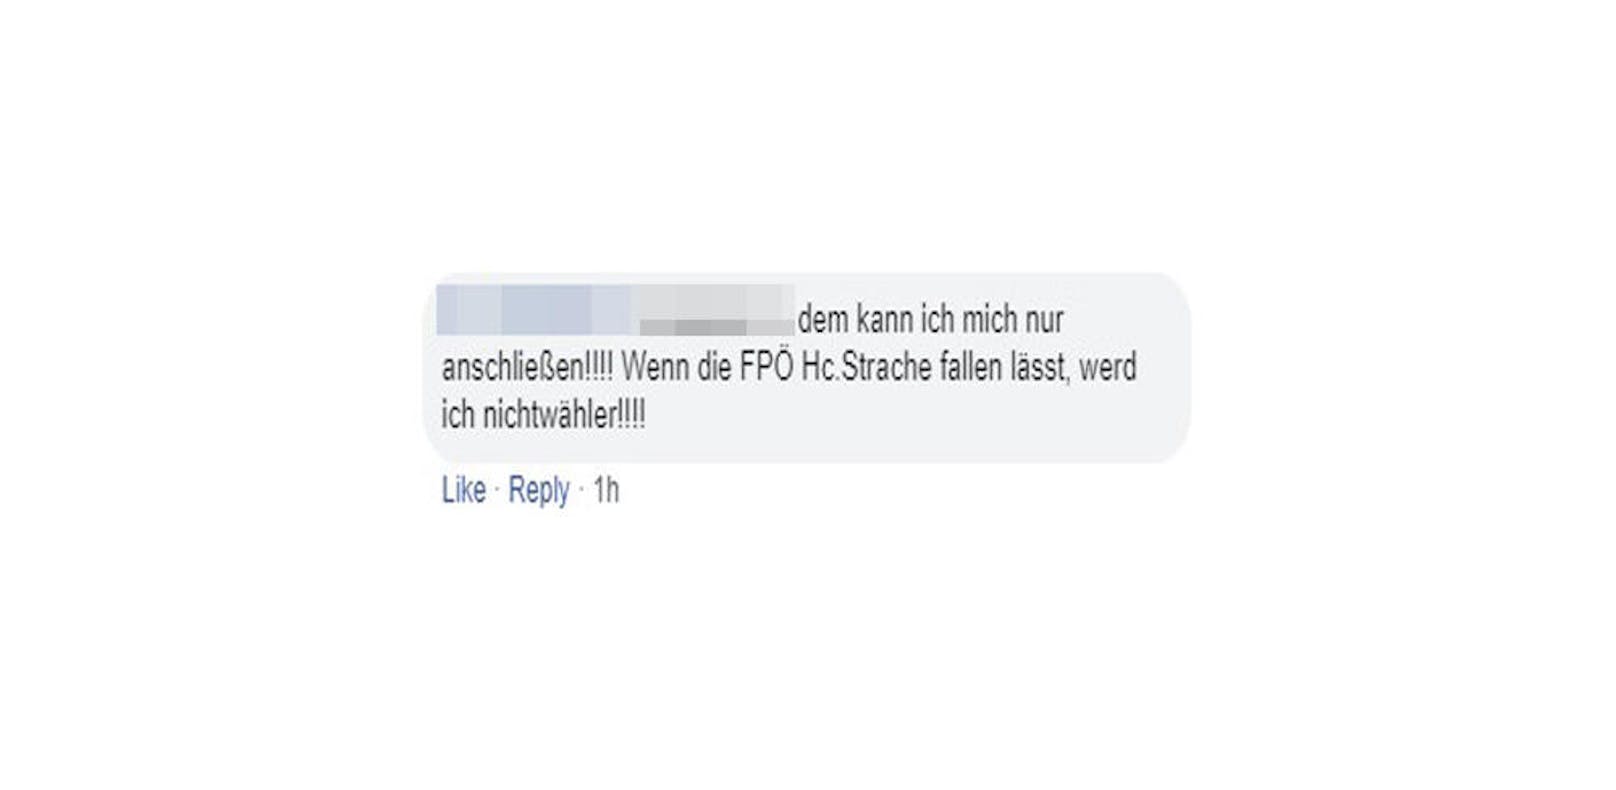 "Wenn die FPÖ HC Strache fallen lässt, werd ich Nichtwähler", droht auch diese Userin.